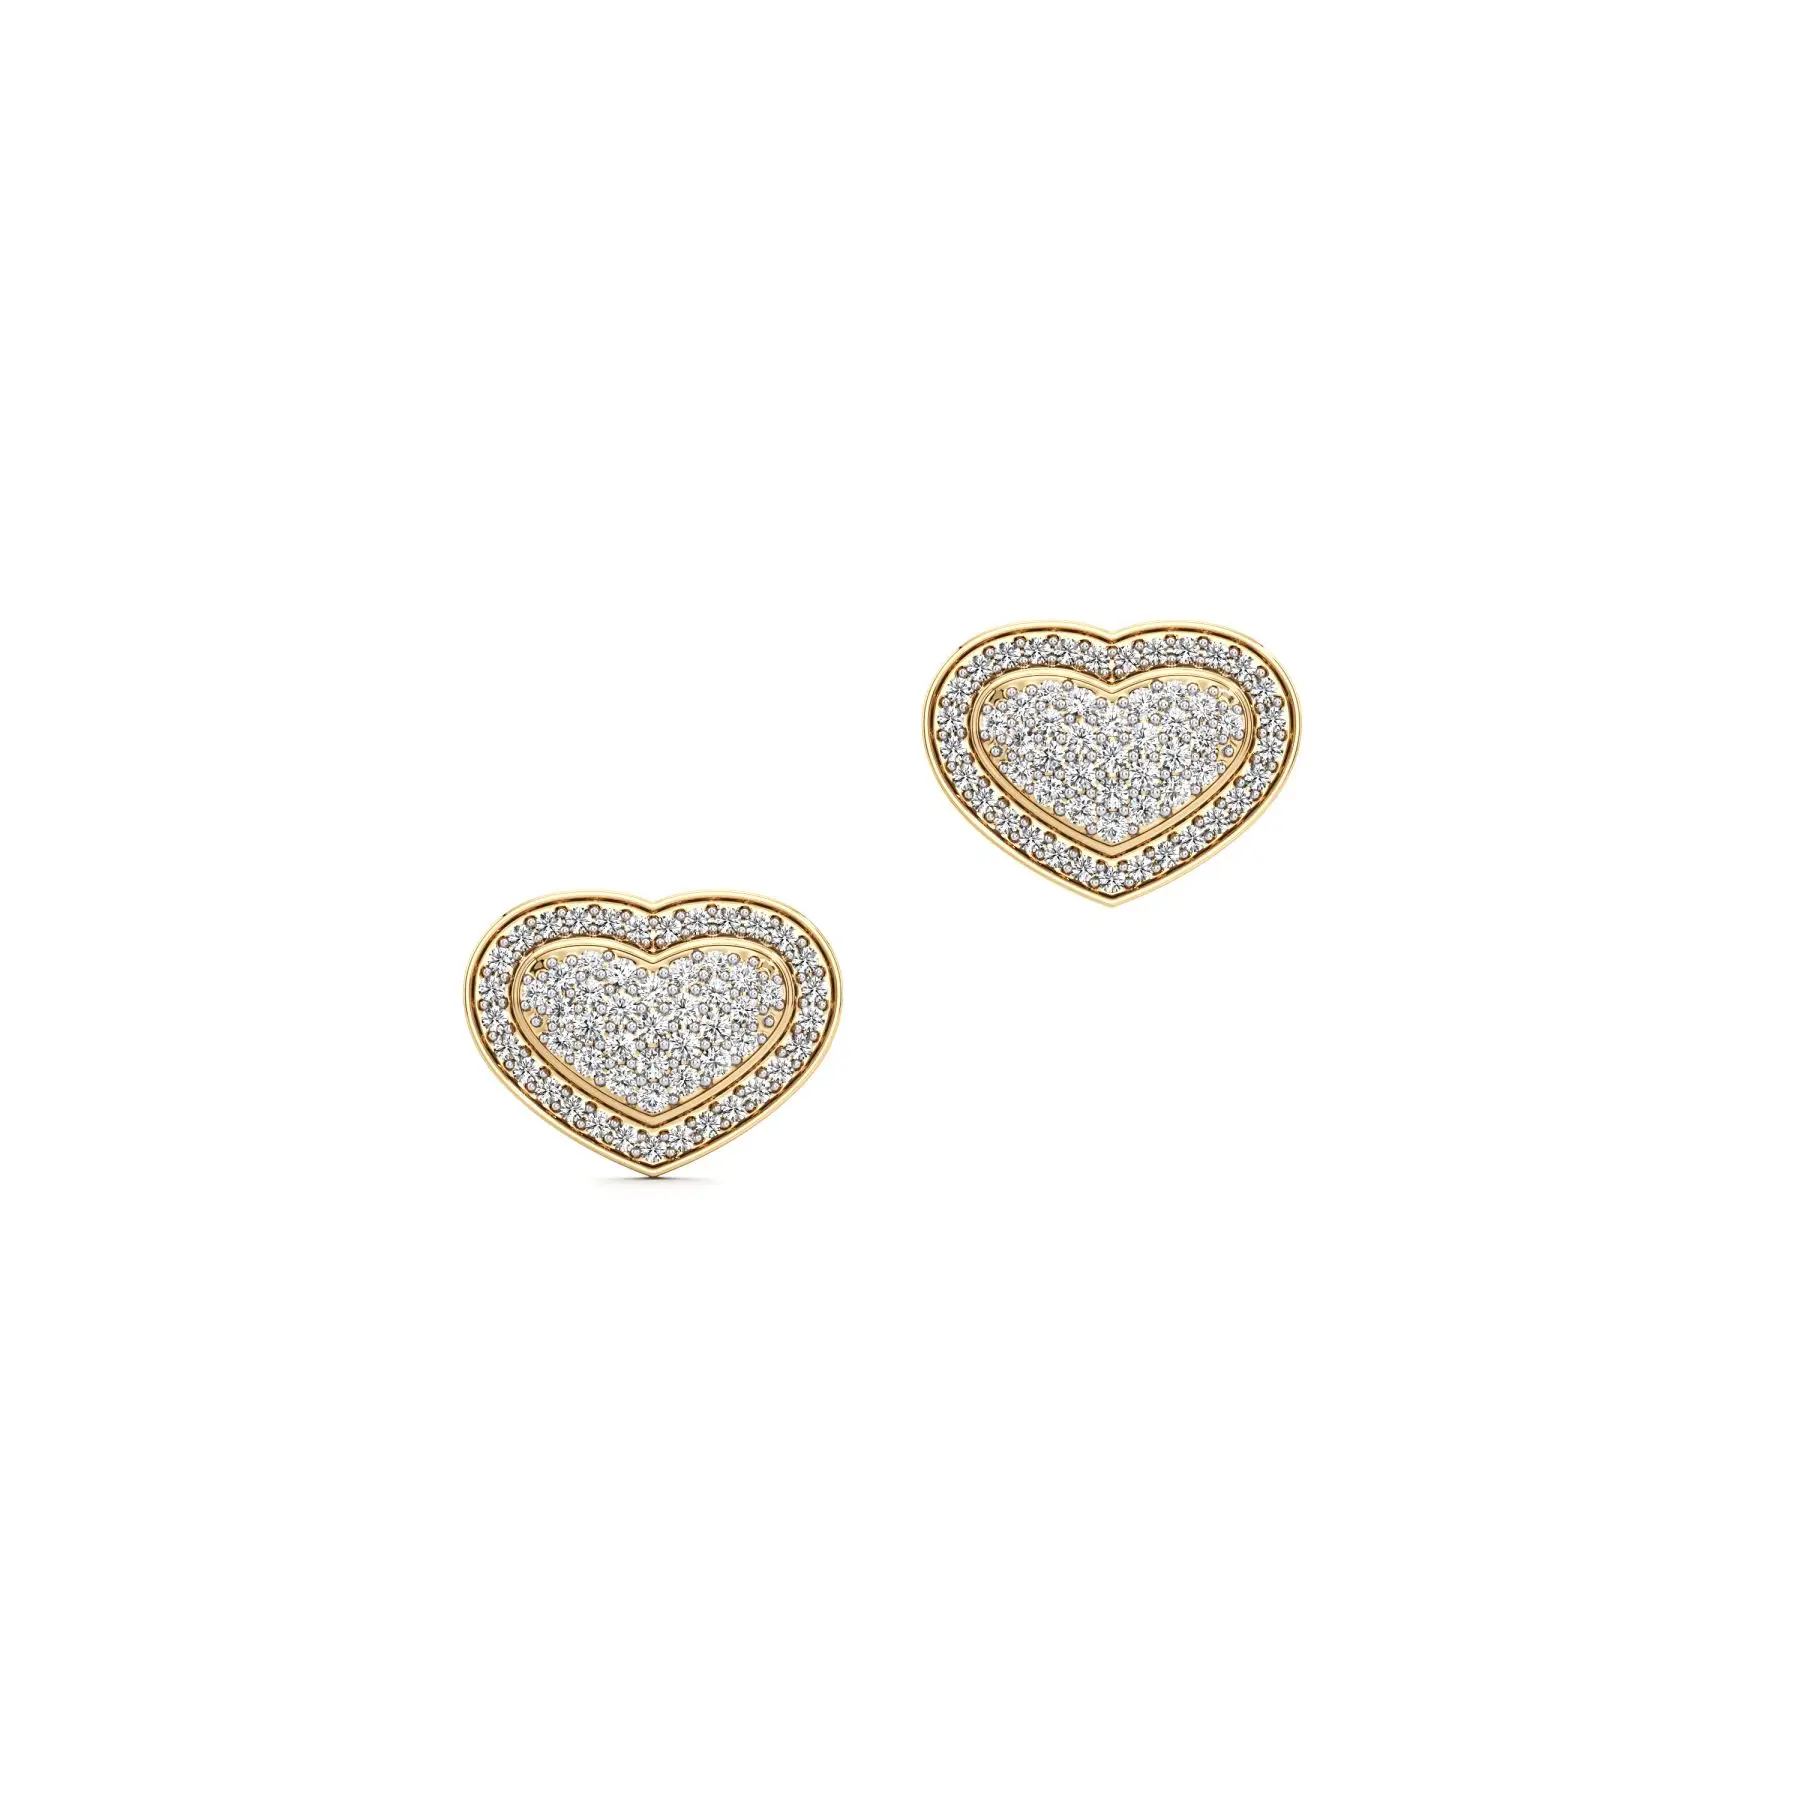 Heart's Delight Diamond Earrings in Yellow 10k Gold